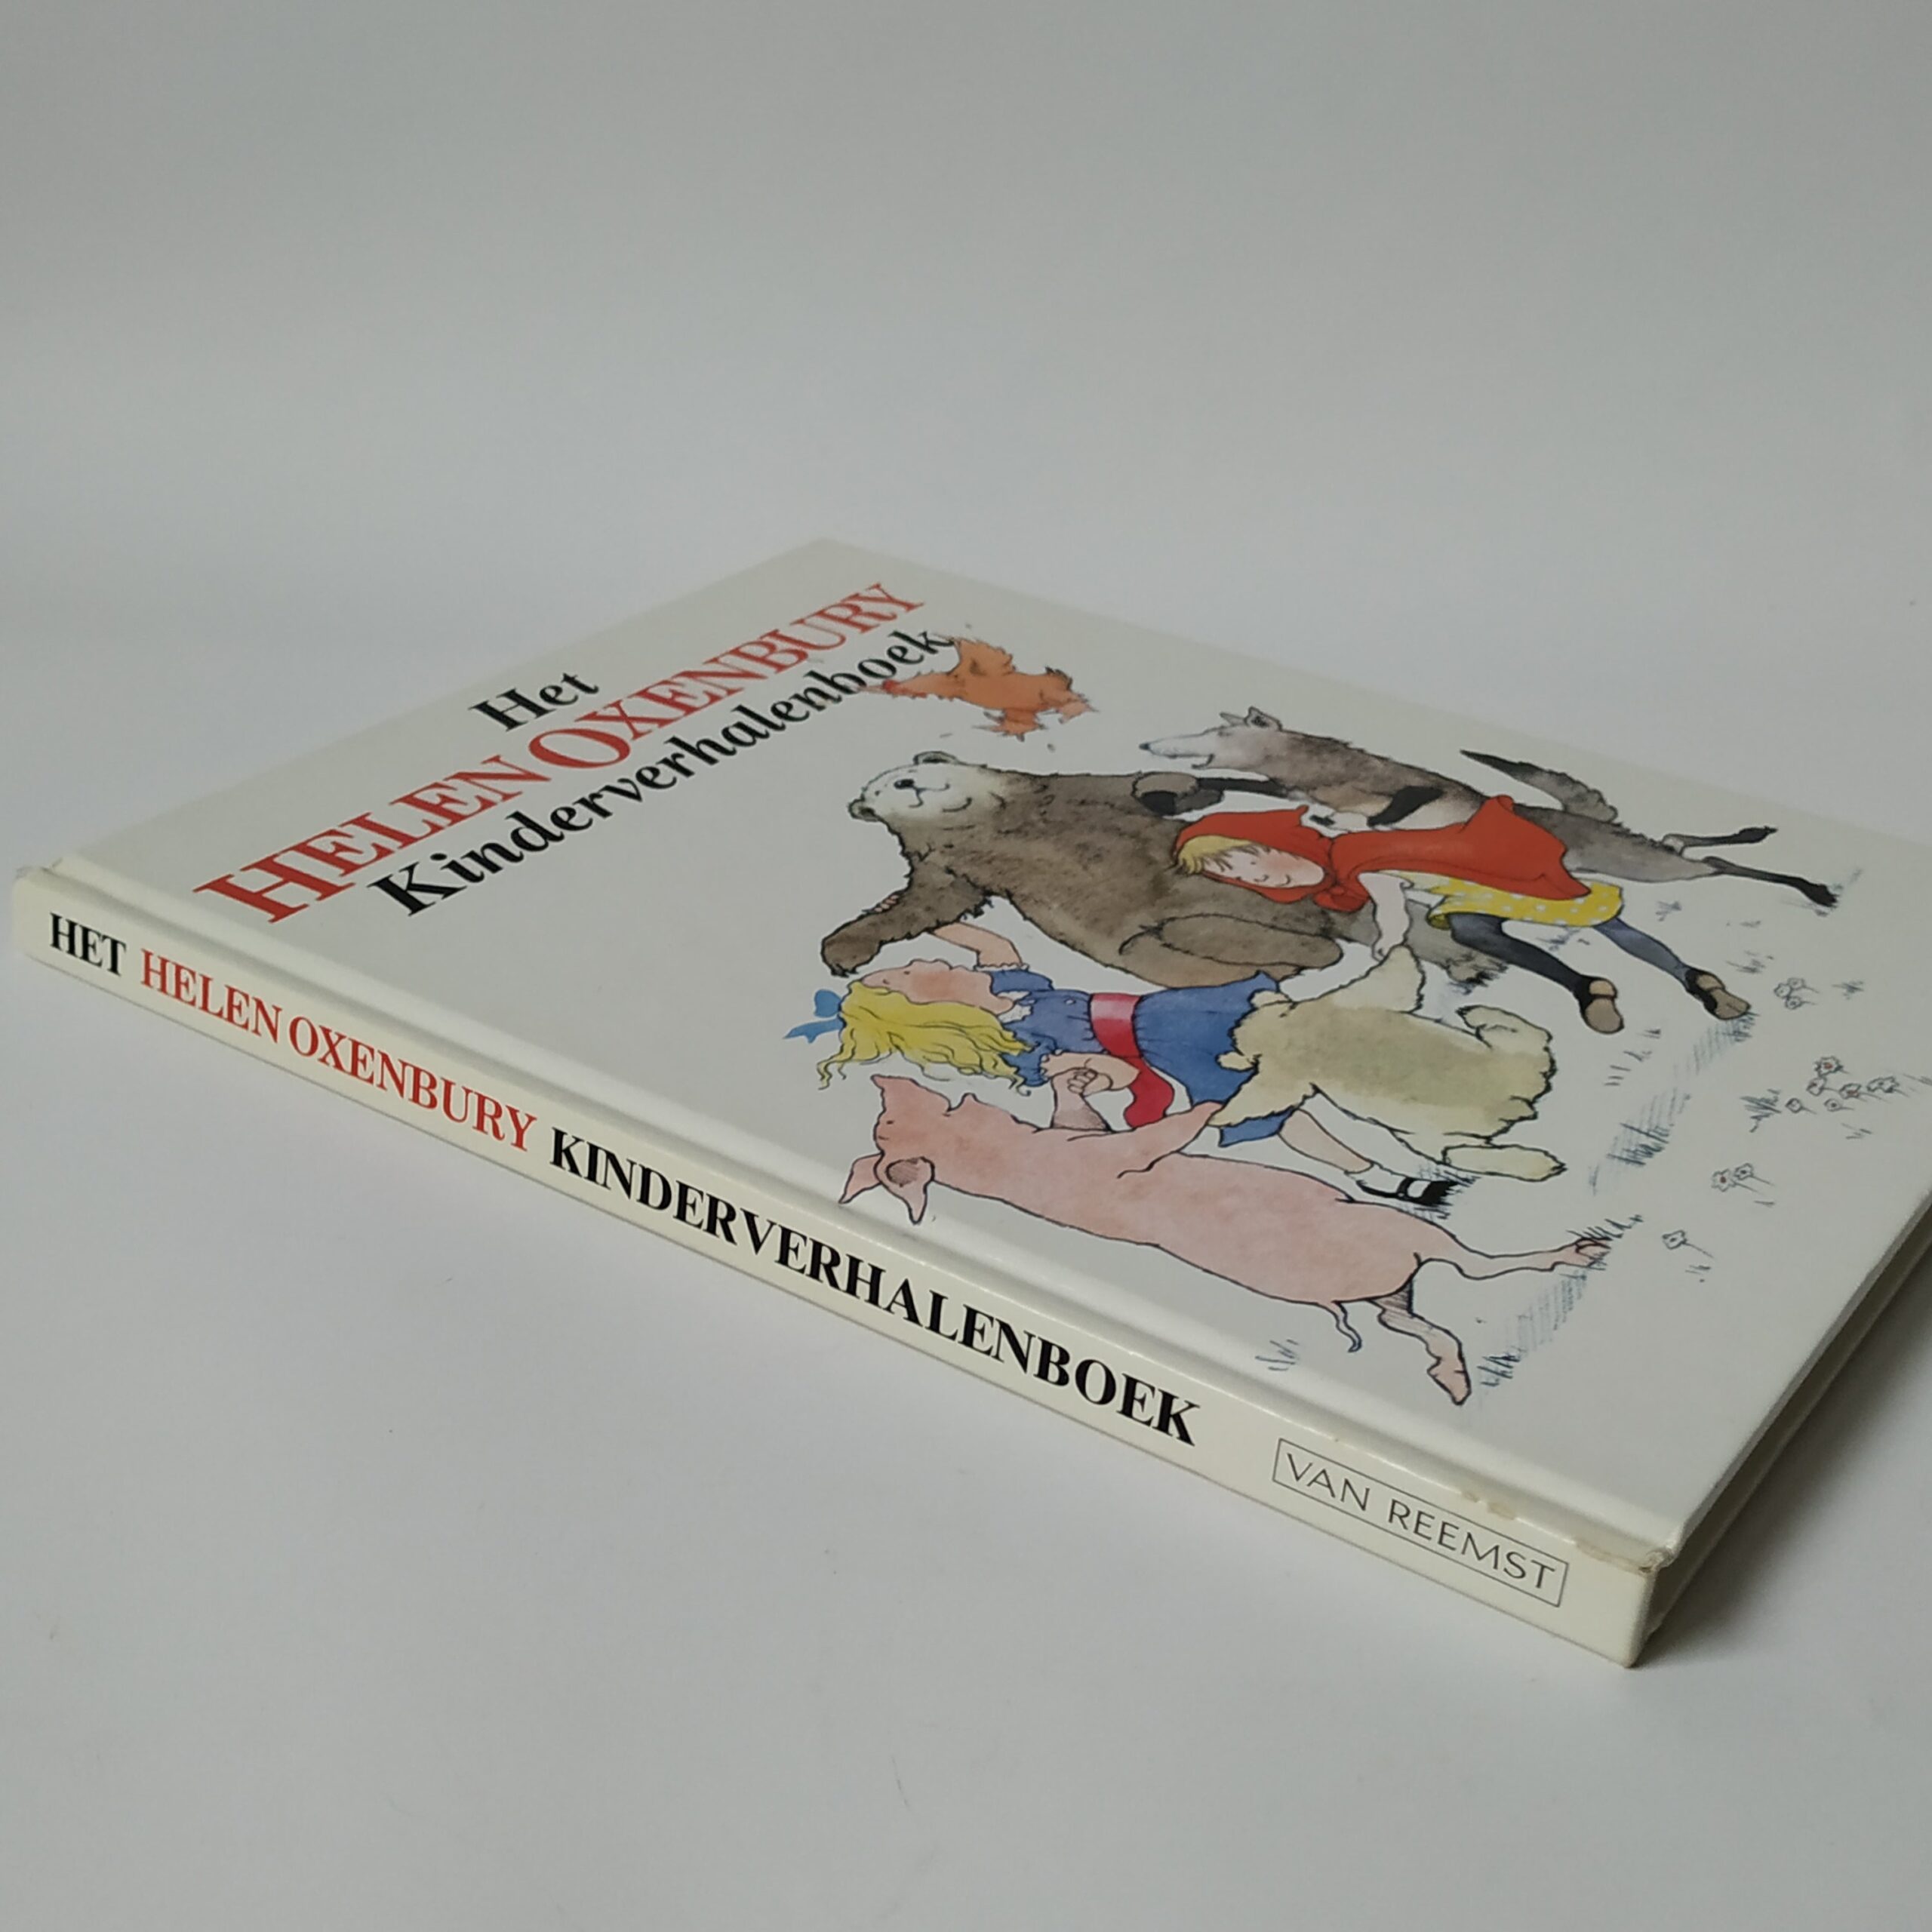 Het Helen Oxenbury Kinderverhalenboek uit 1985 (3)